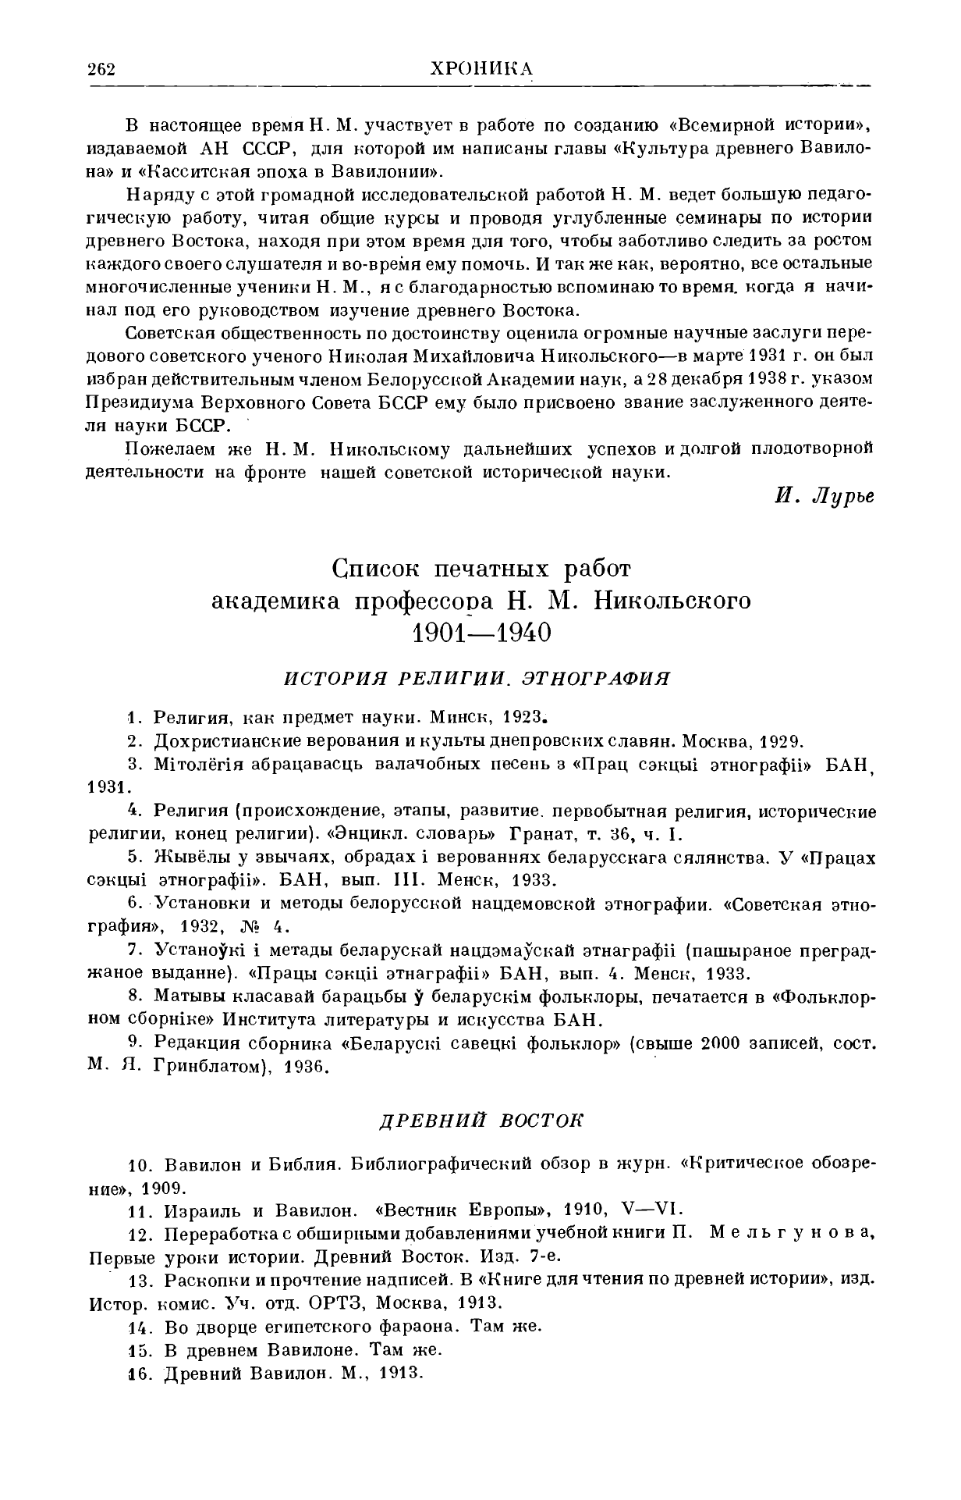 Список печатных работ академика профессора Н.М. Никольского. 1901–1940